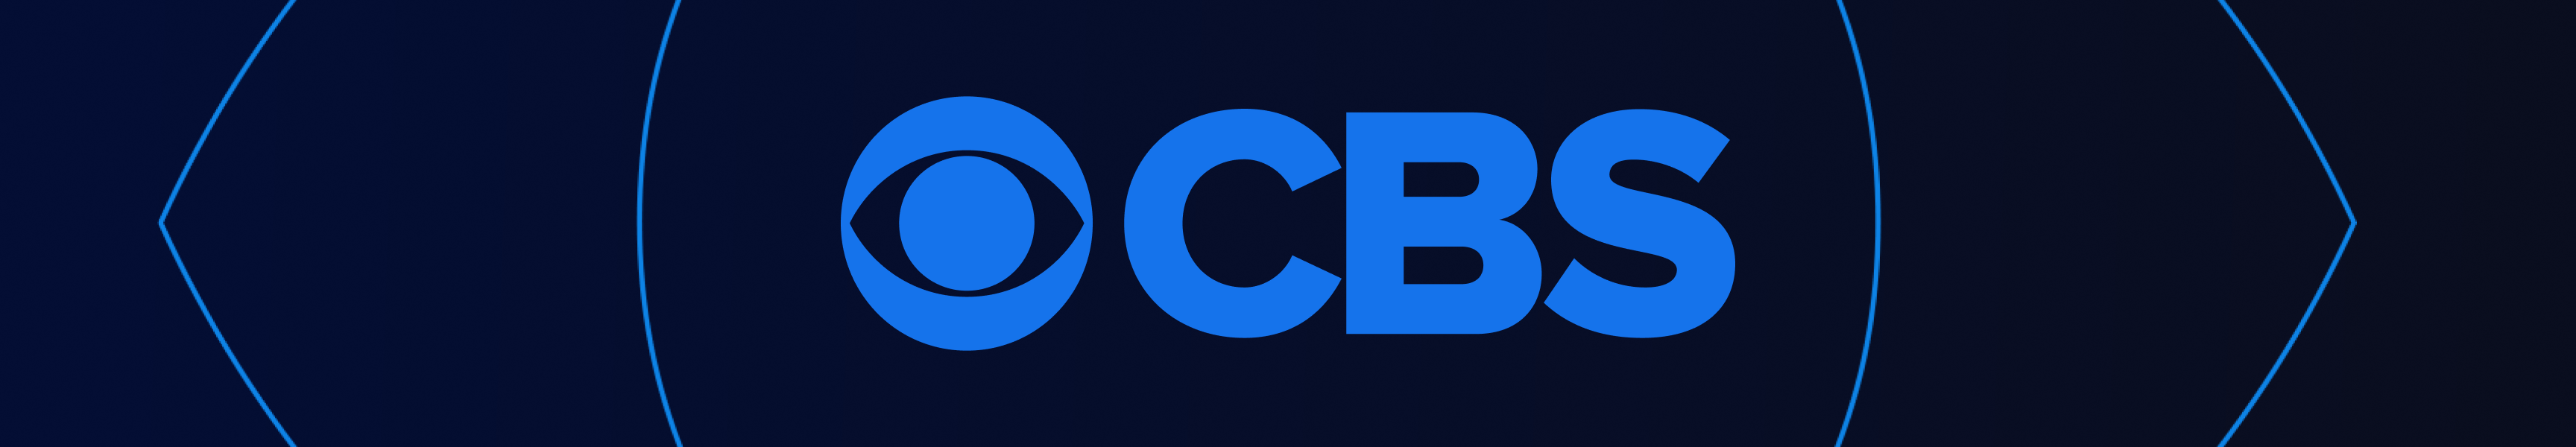 CBS Unterhaltung Bestsellern